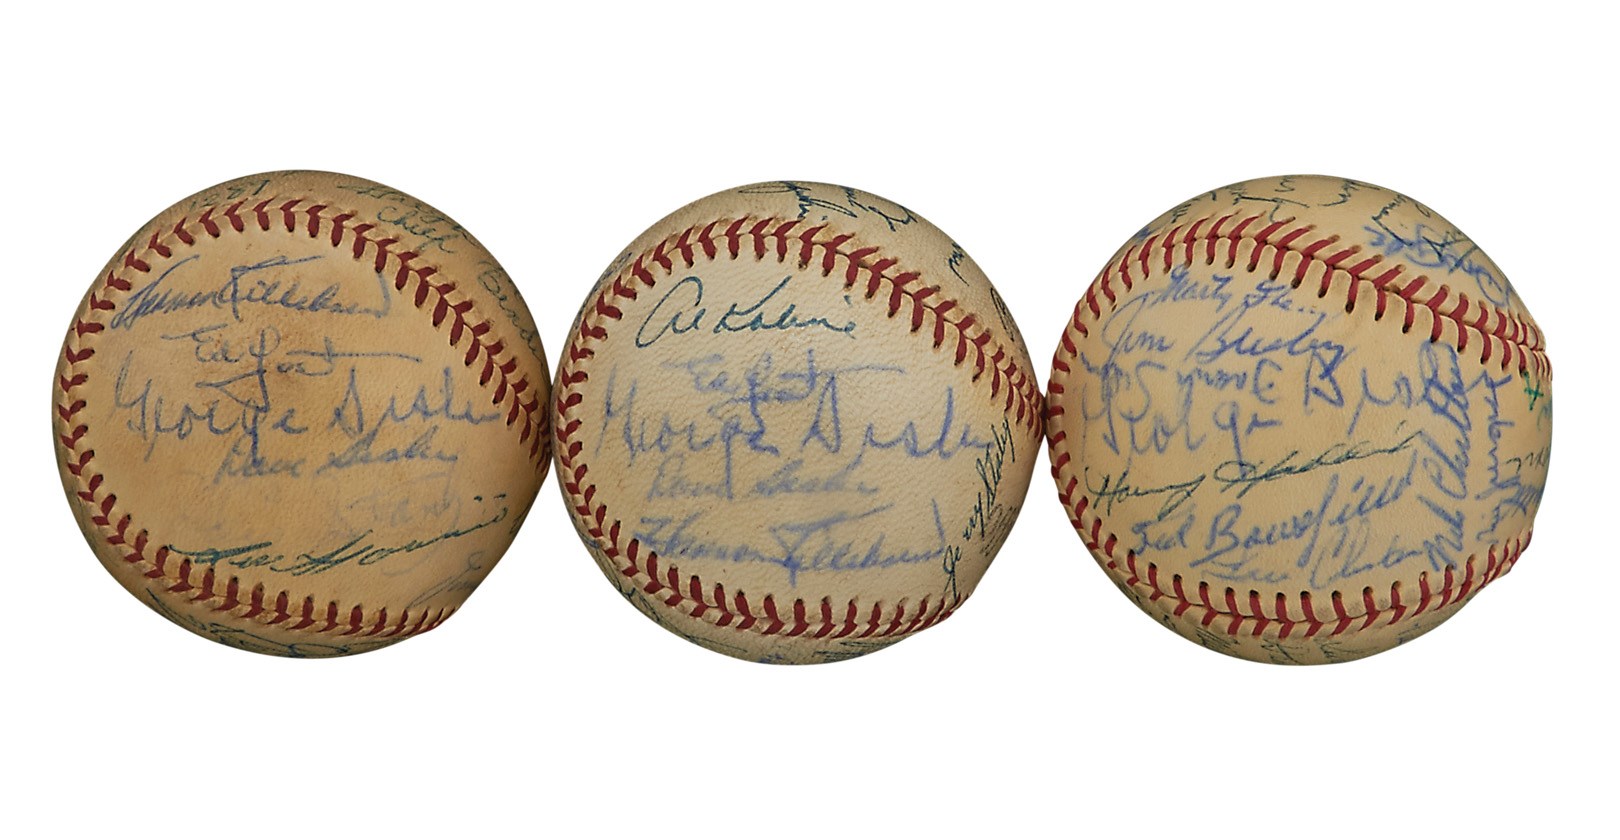 - 1960s Hall of Fame & Old Timers Signed Baseballs ALL w/George Sisler (PSA) (3)